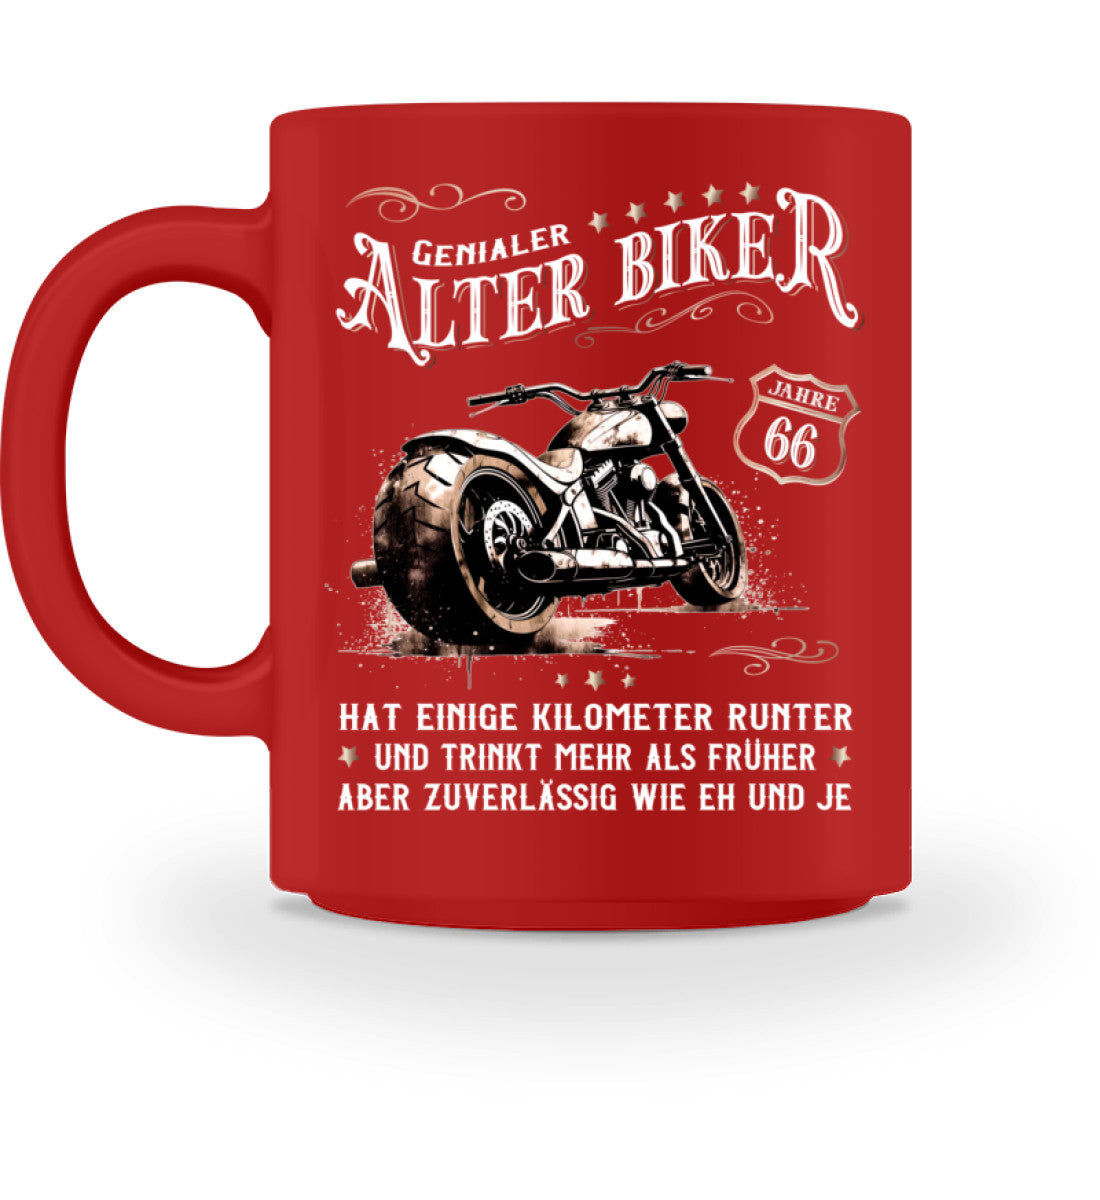 Eine Biker Geburtstags-Tasse für Motorradfahrer, von Wingbikers, mit dem beidseitigen Aufdruck, Alter Biker - 66 Jahre - Einige Kilometer runter, trinkt mehr - aber zuverlässig wie eh und je, in rot.